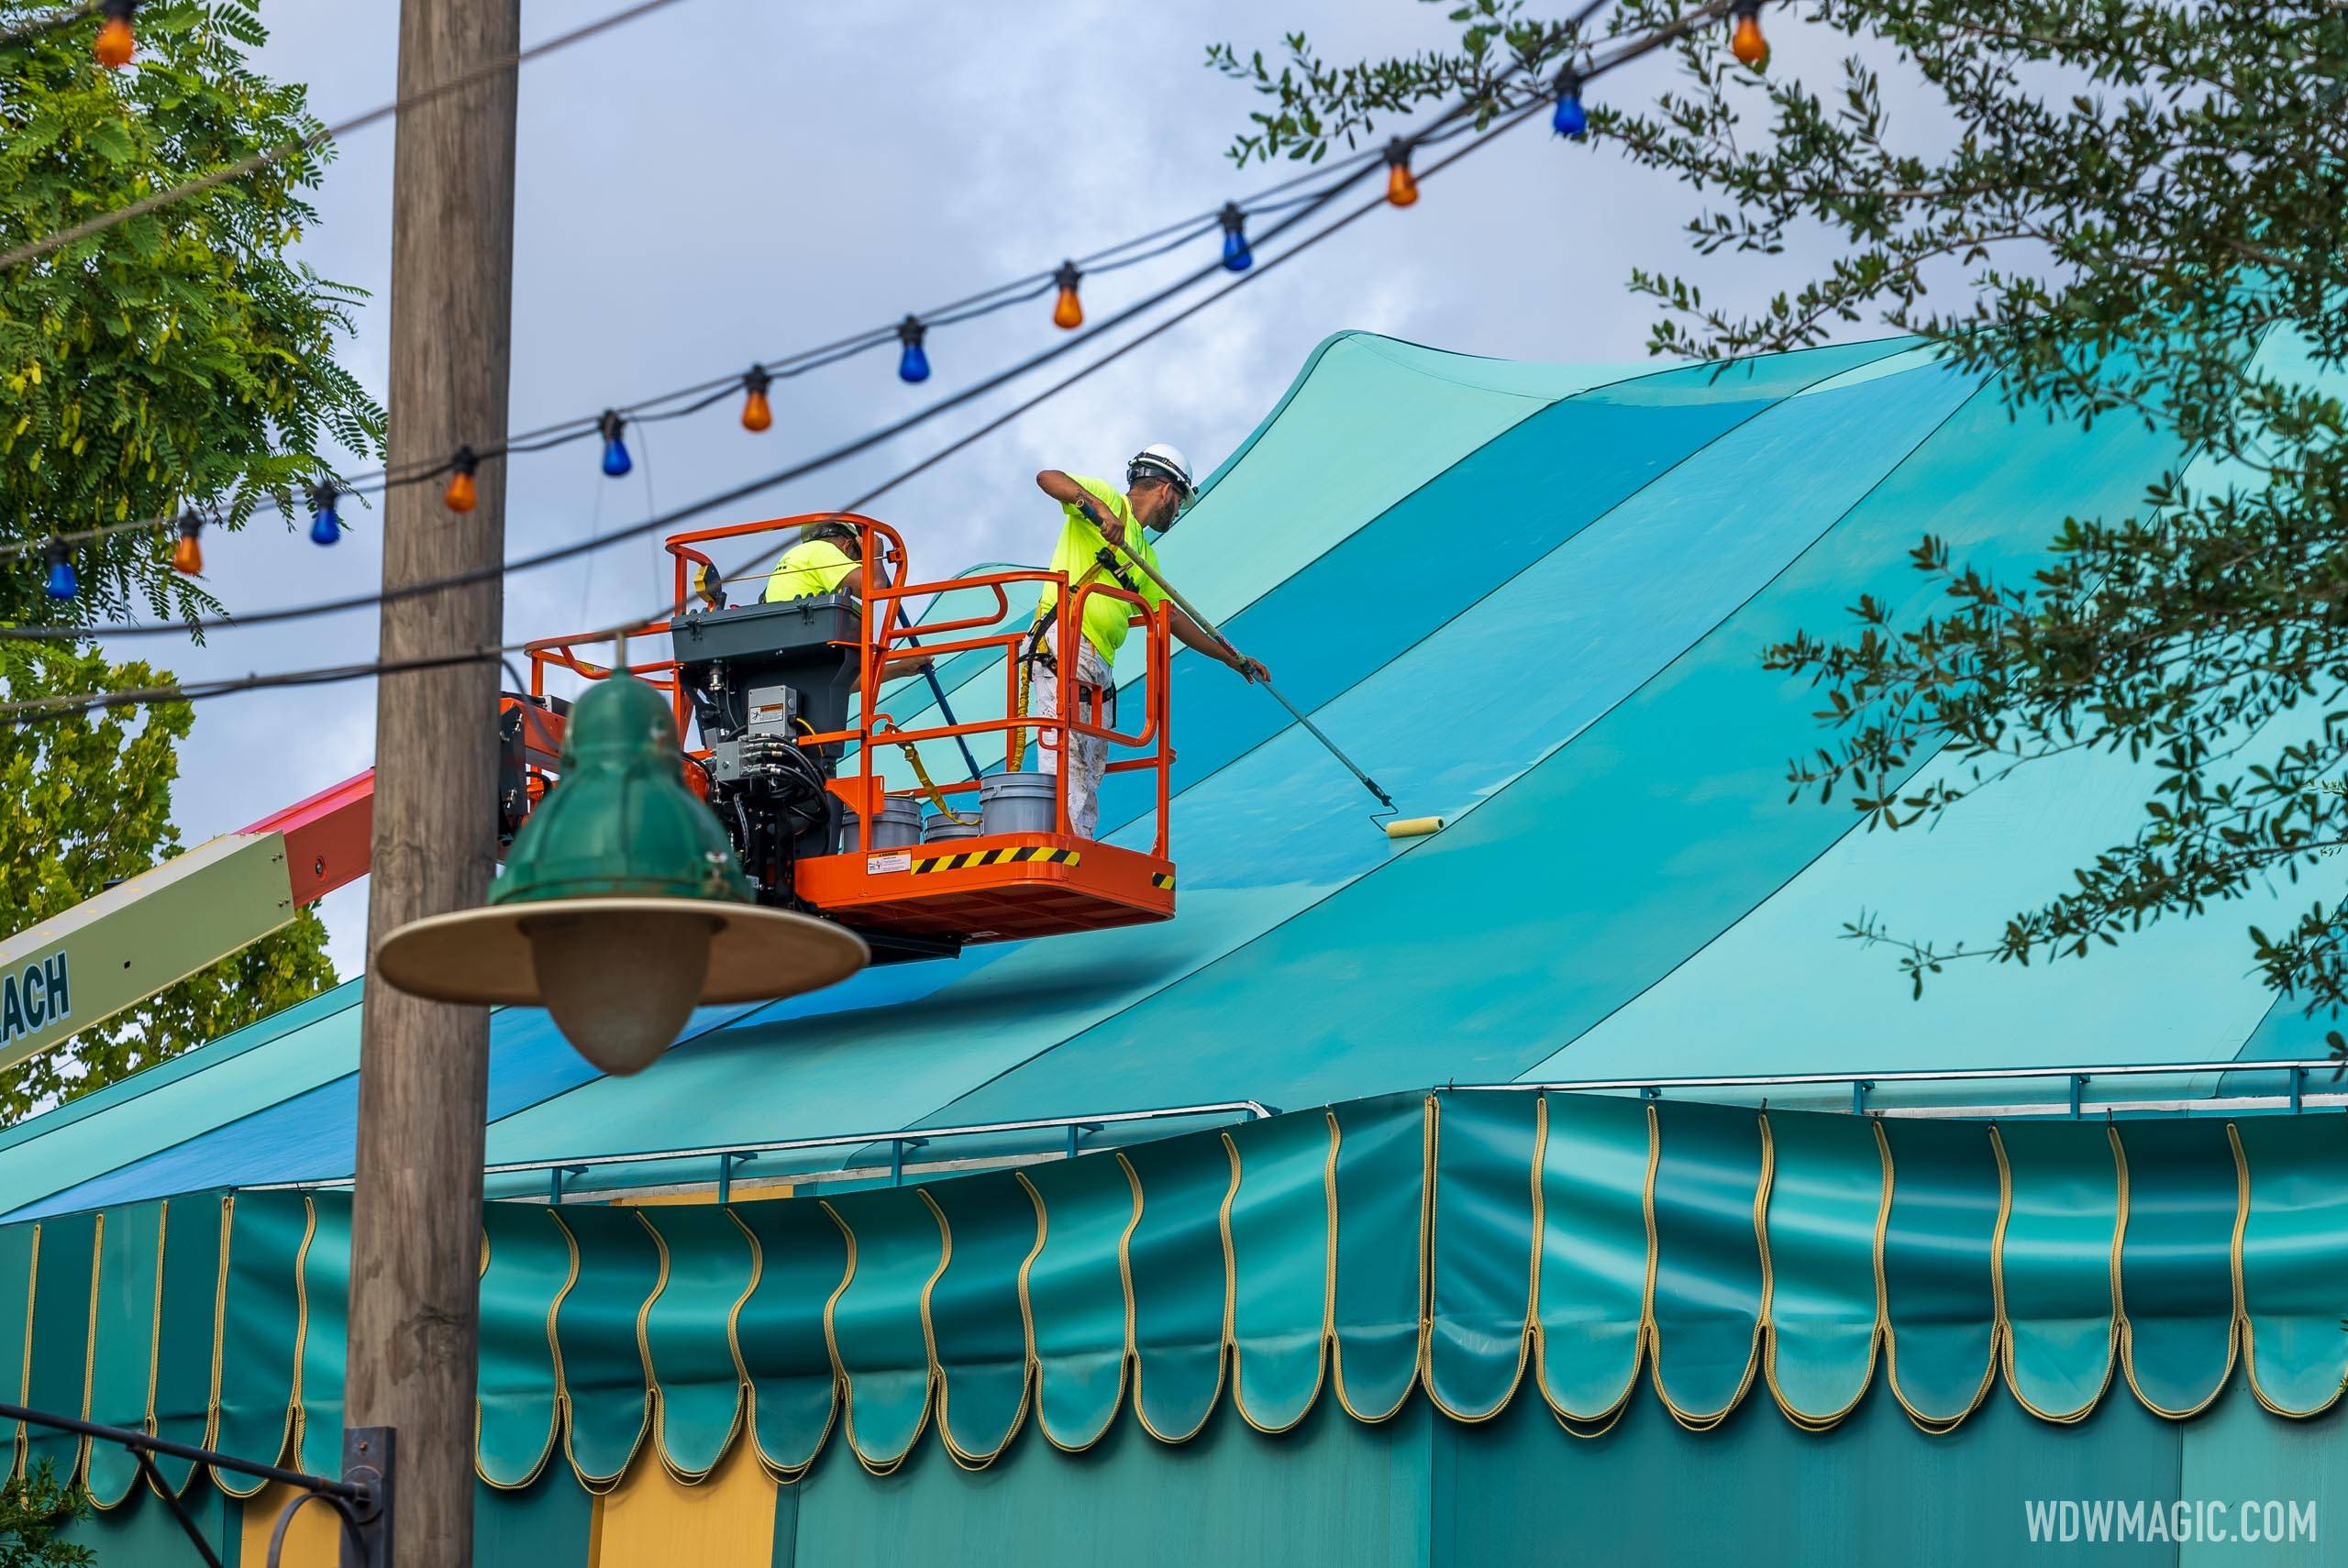 Storybook Circus big top tent refurbishment - August 2 2021